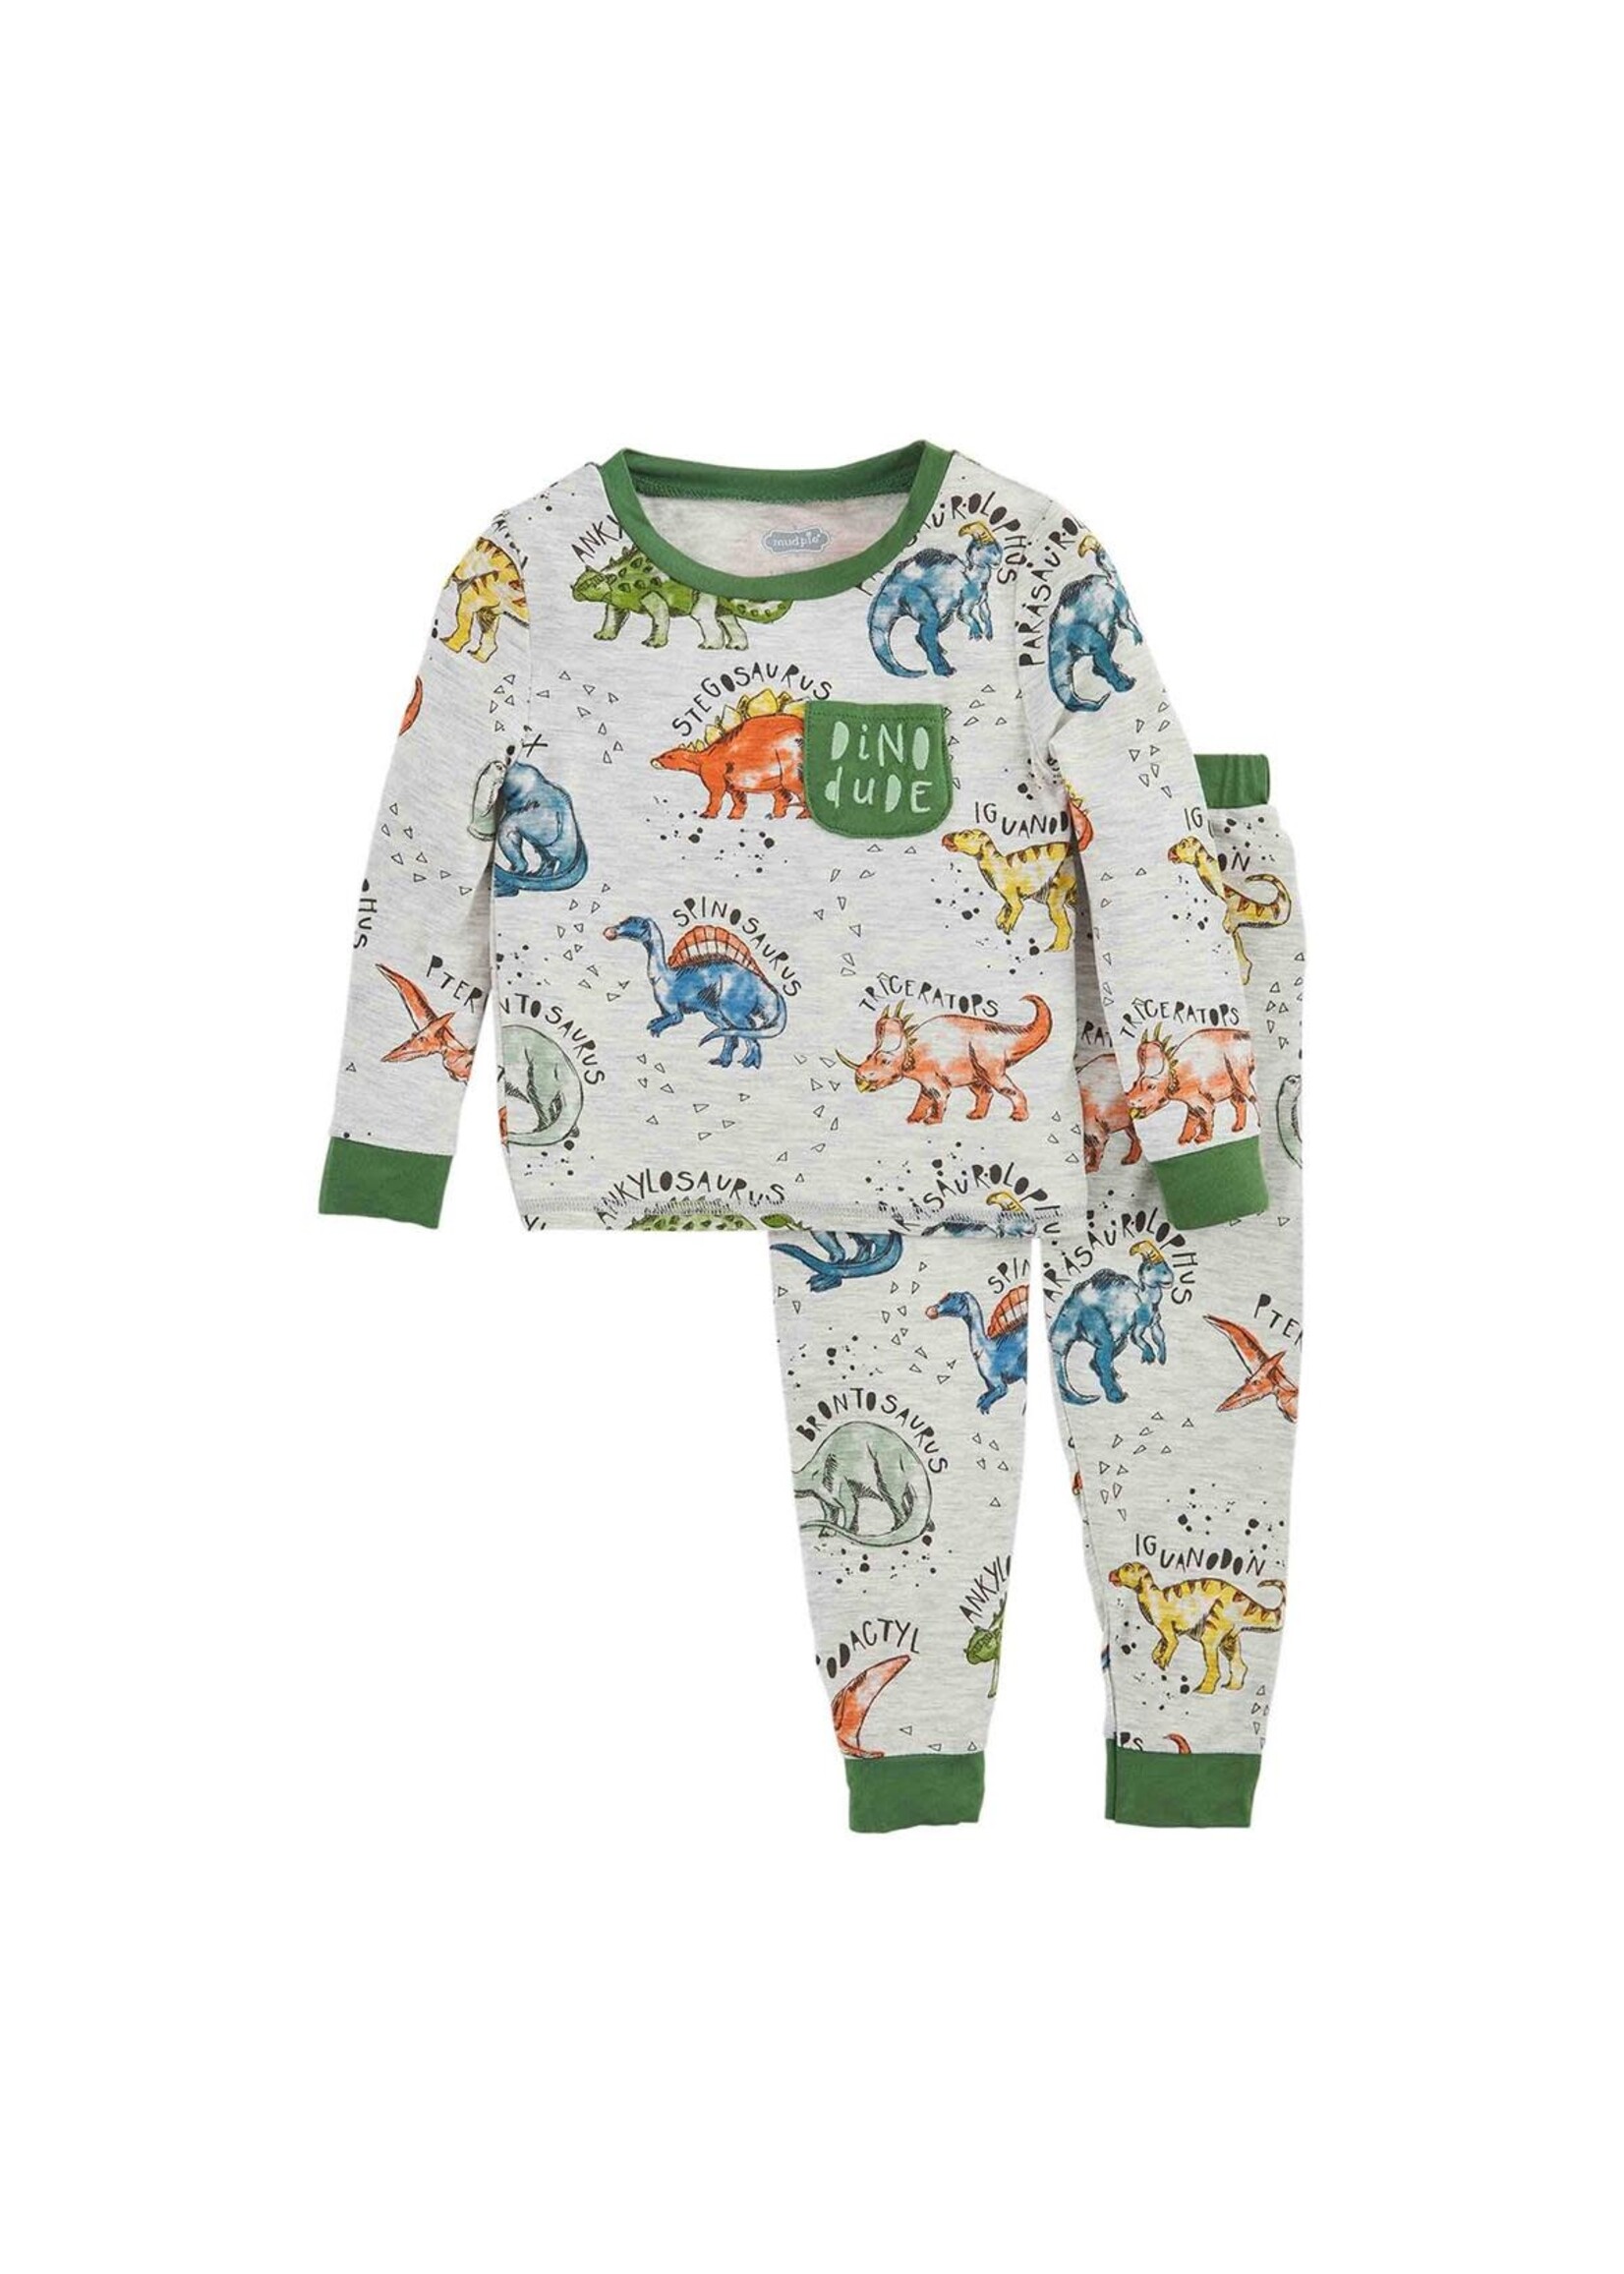 MudPie Dino Print Boy Pajamas